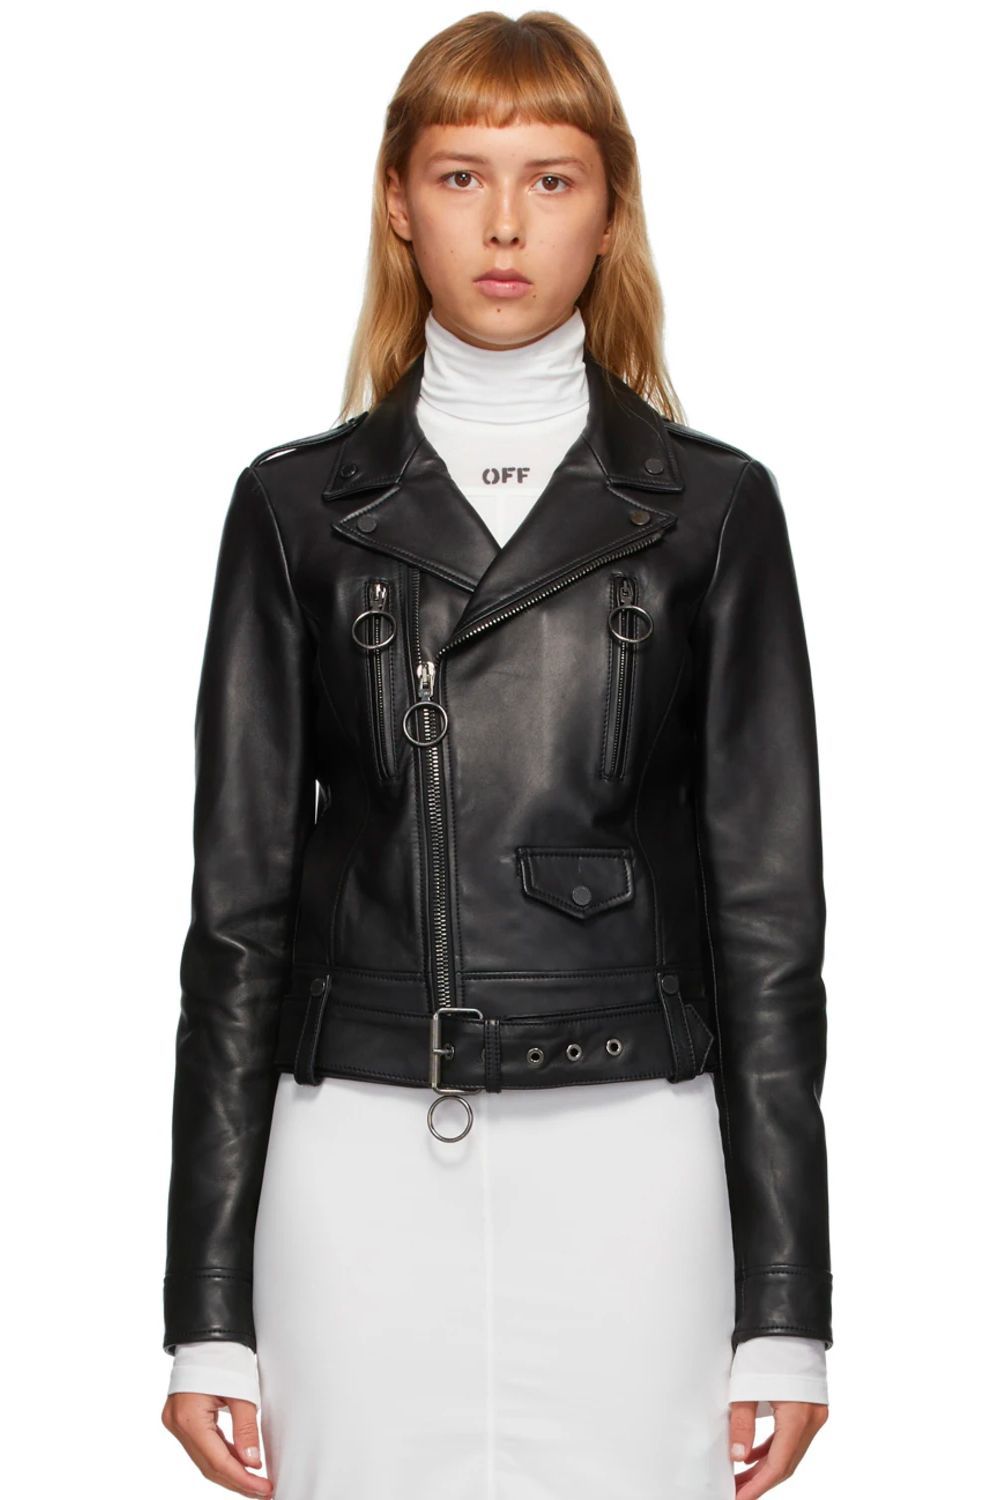 leather jacket under 100